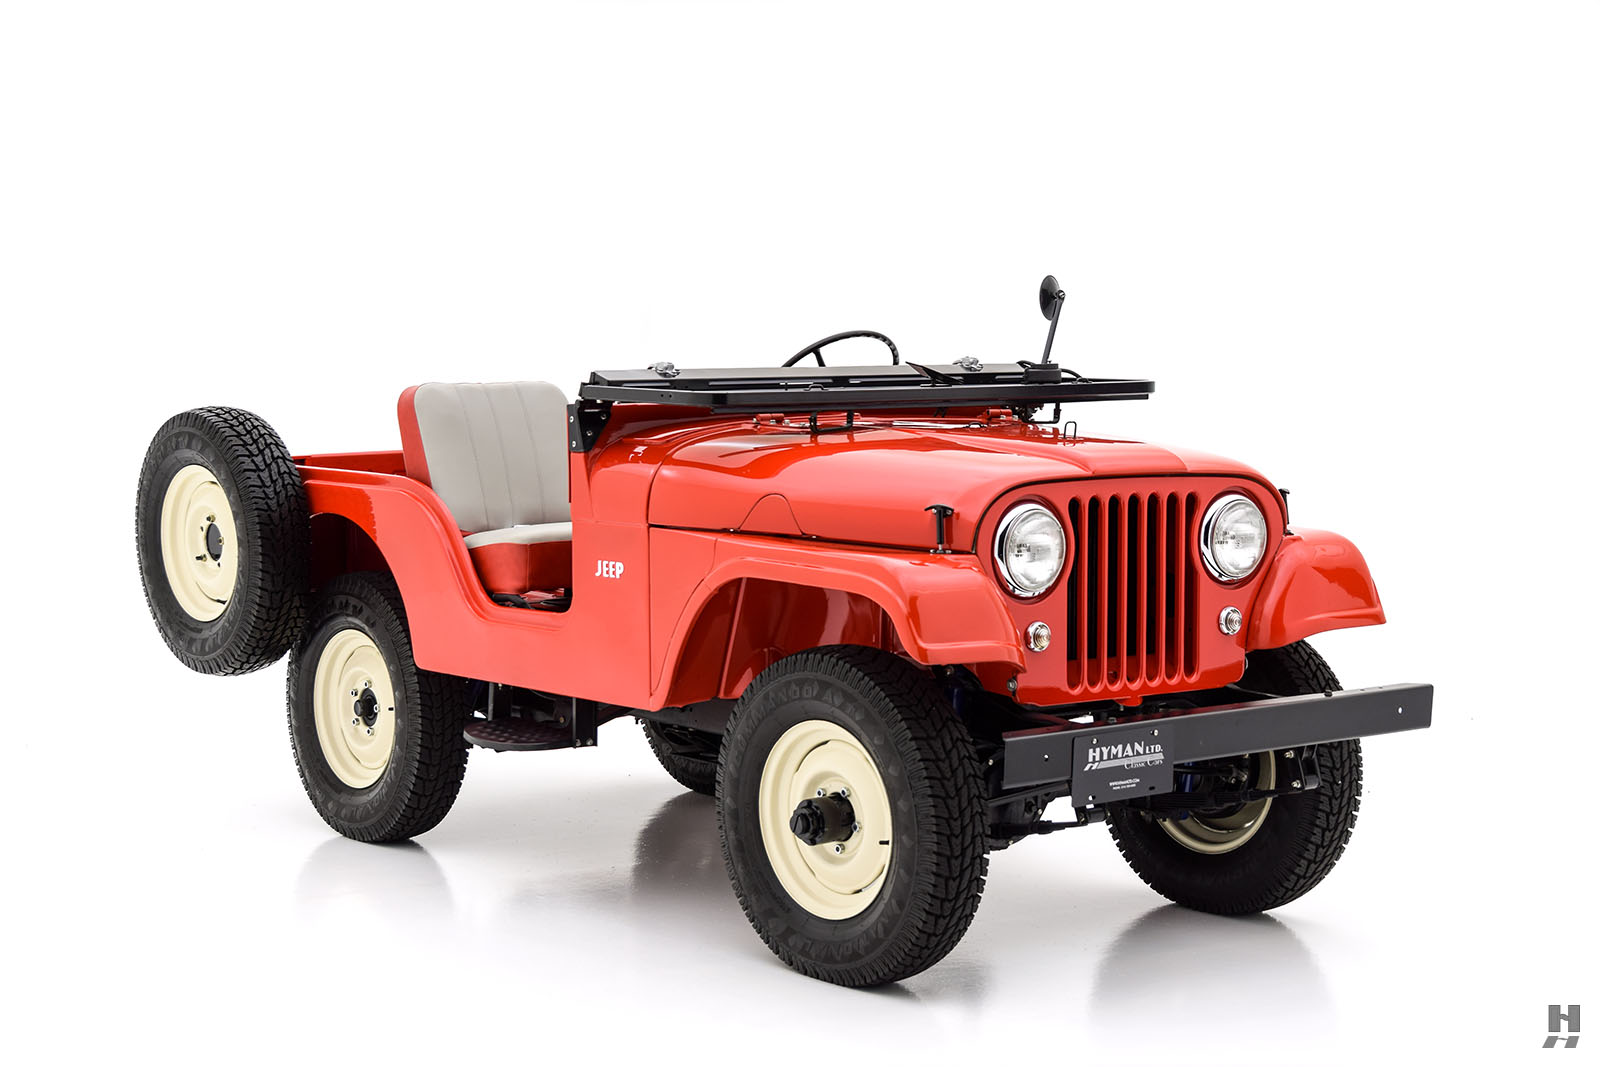 1955 willys-jeep cj-5 1/4 ton